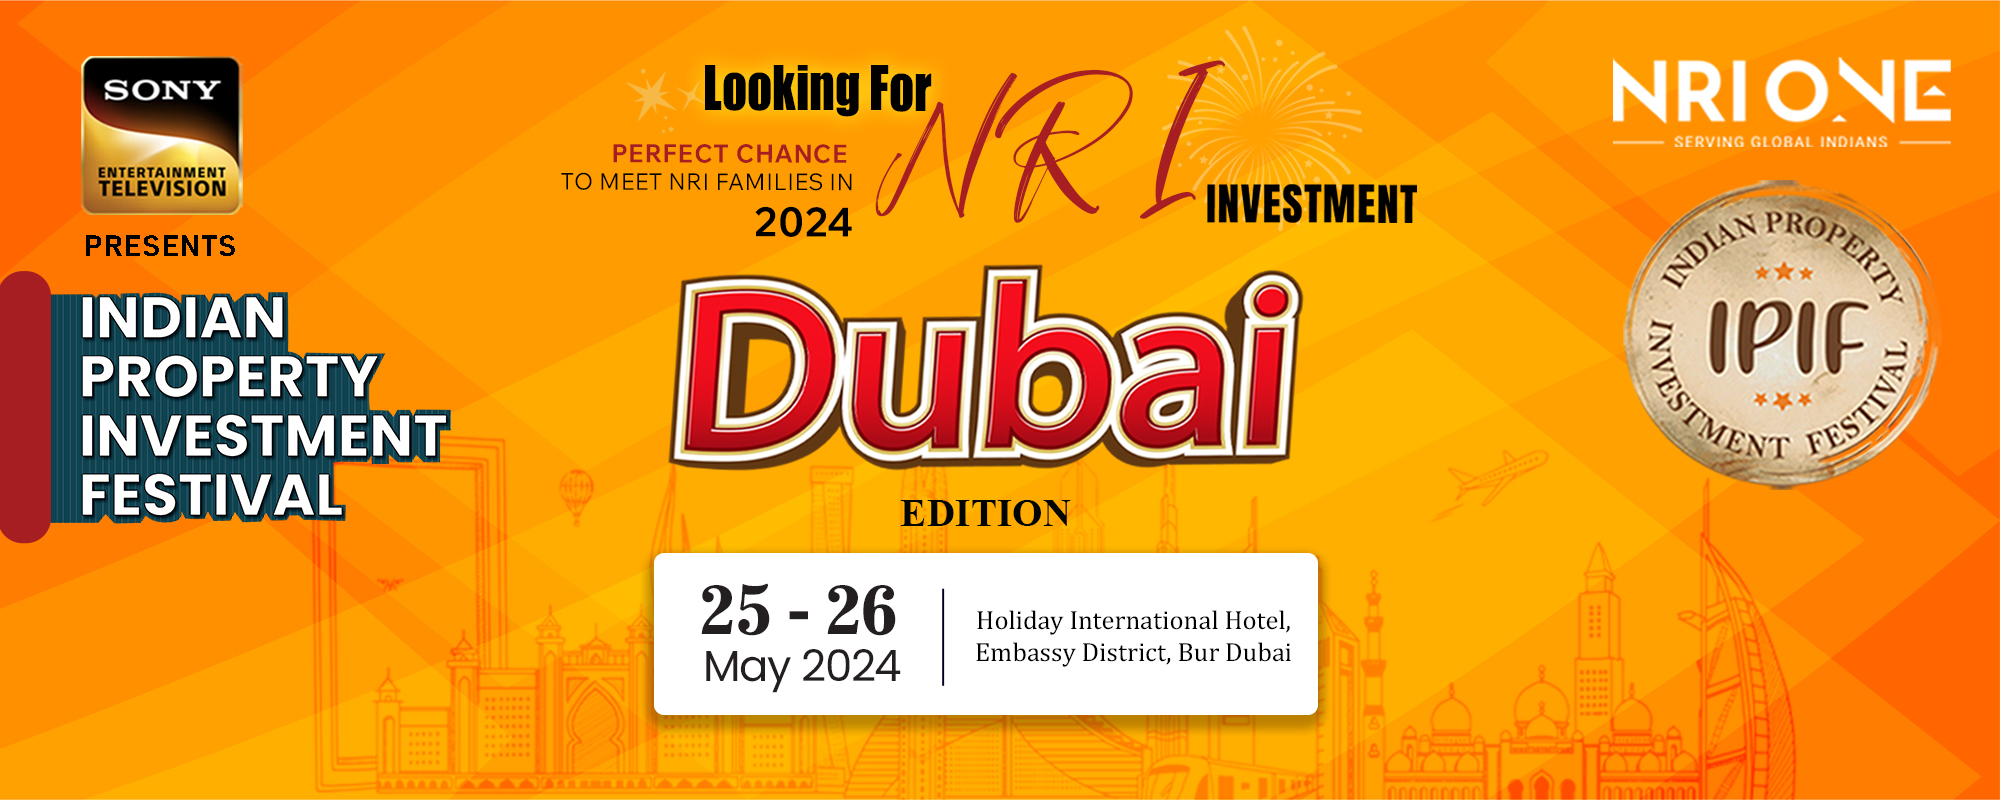 2000 x 800 dubai- home page - NRIONE - Dubai